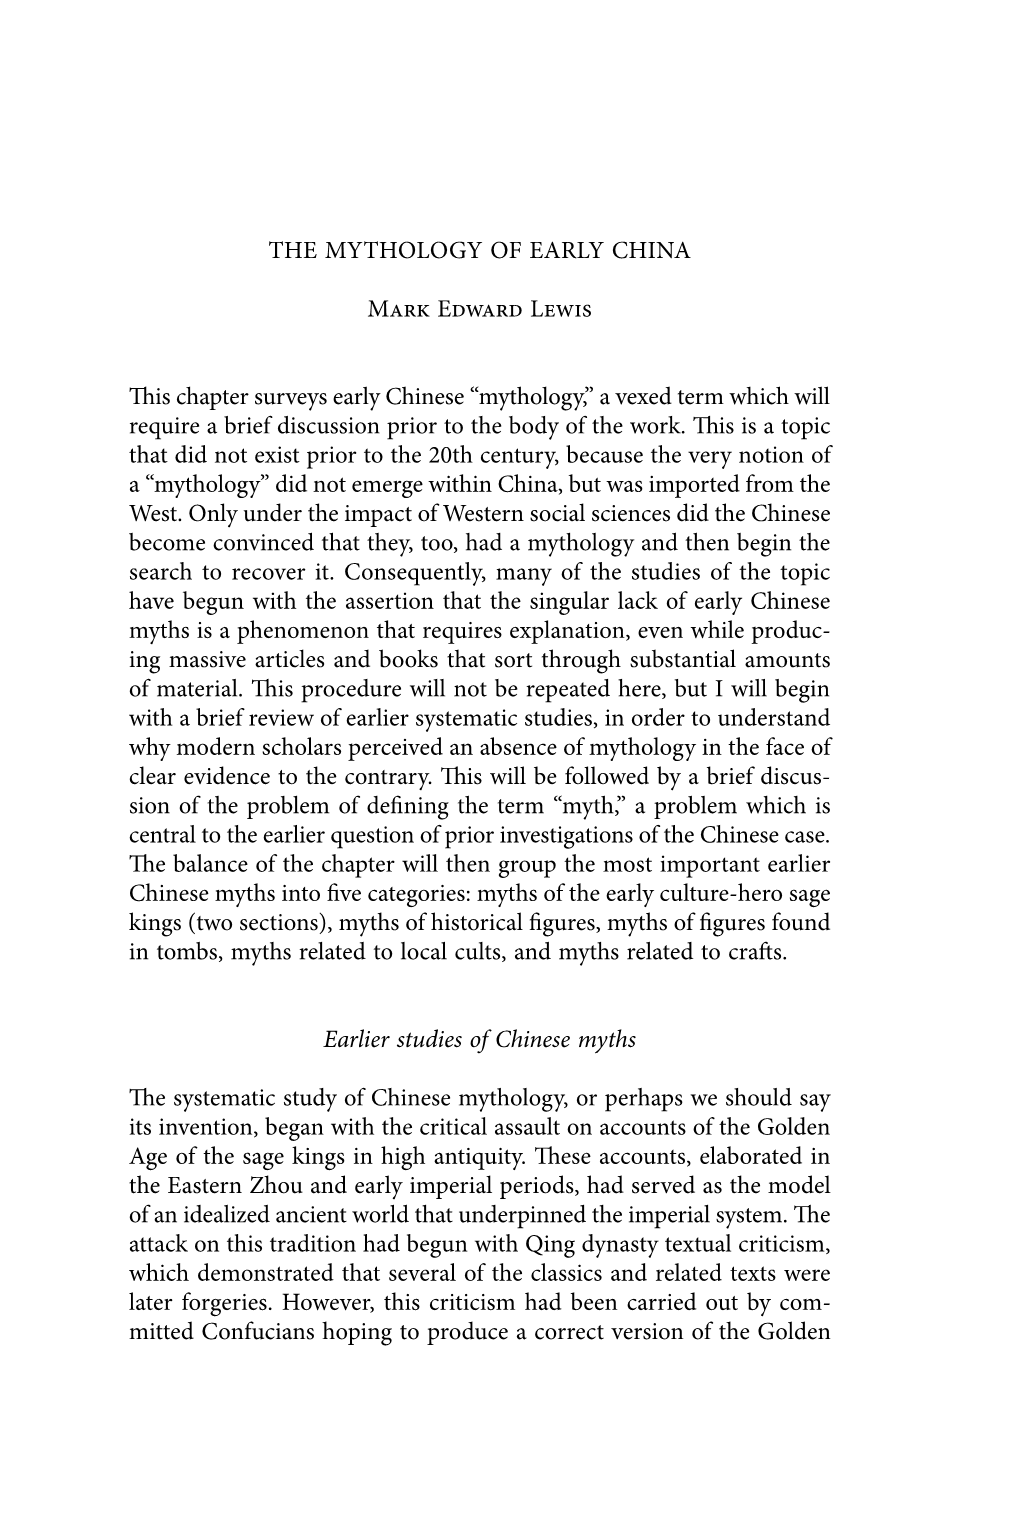 Mythology of Early China